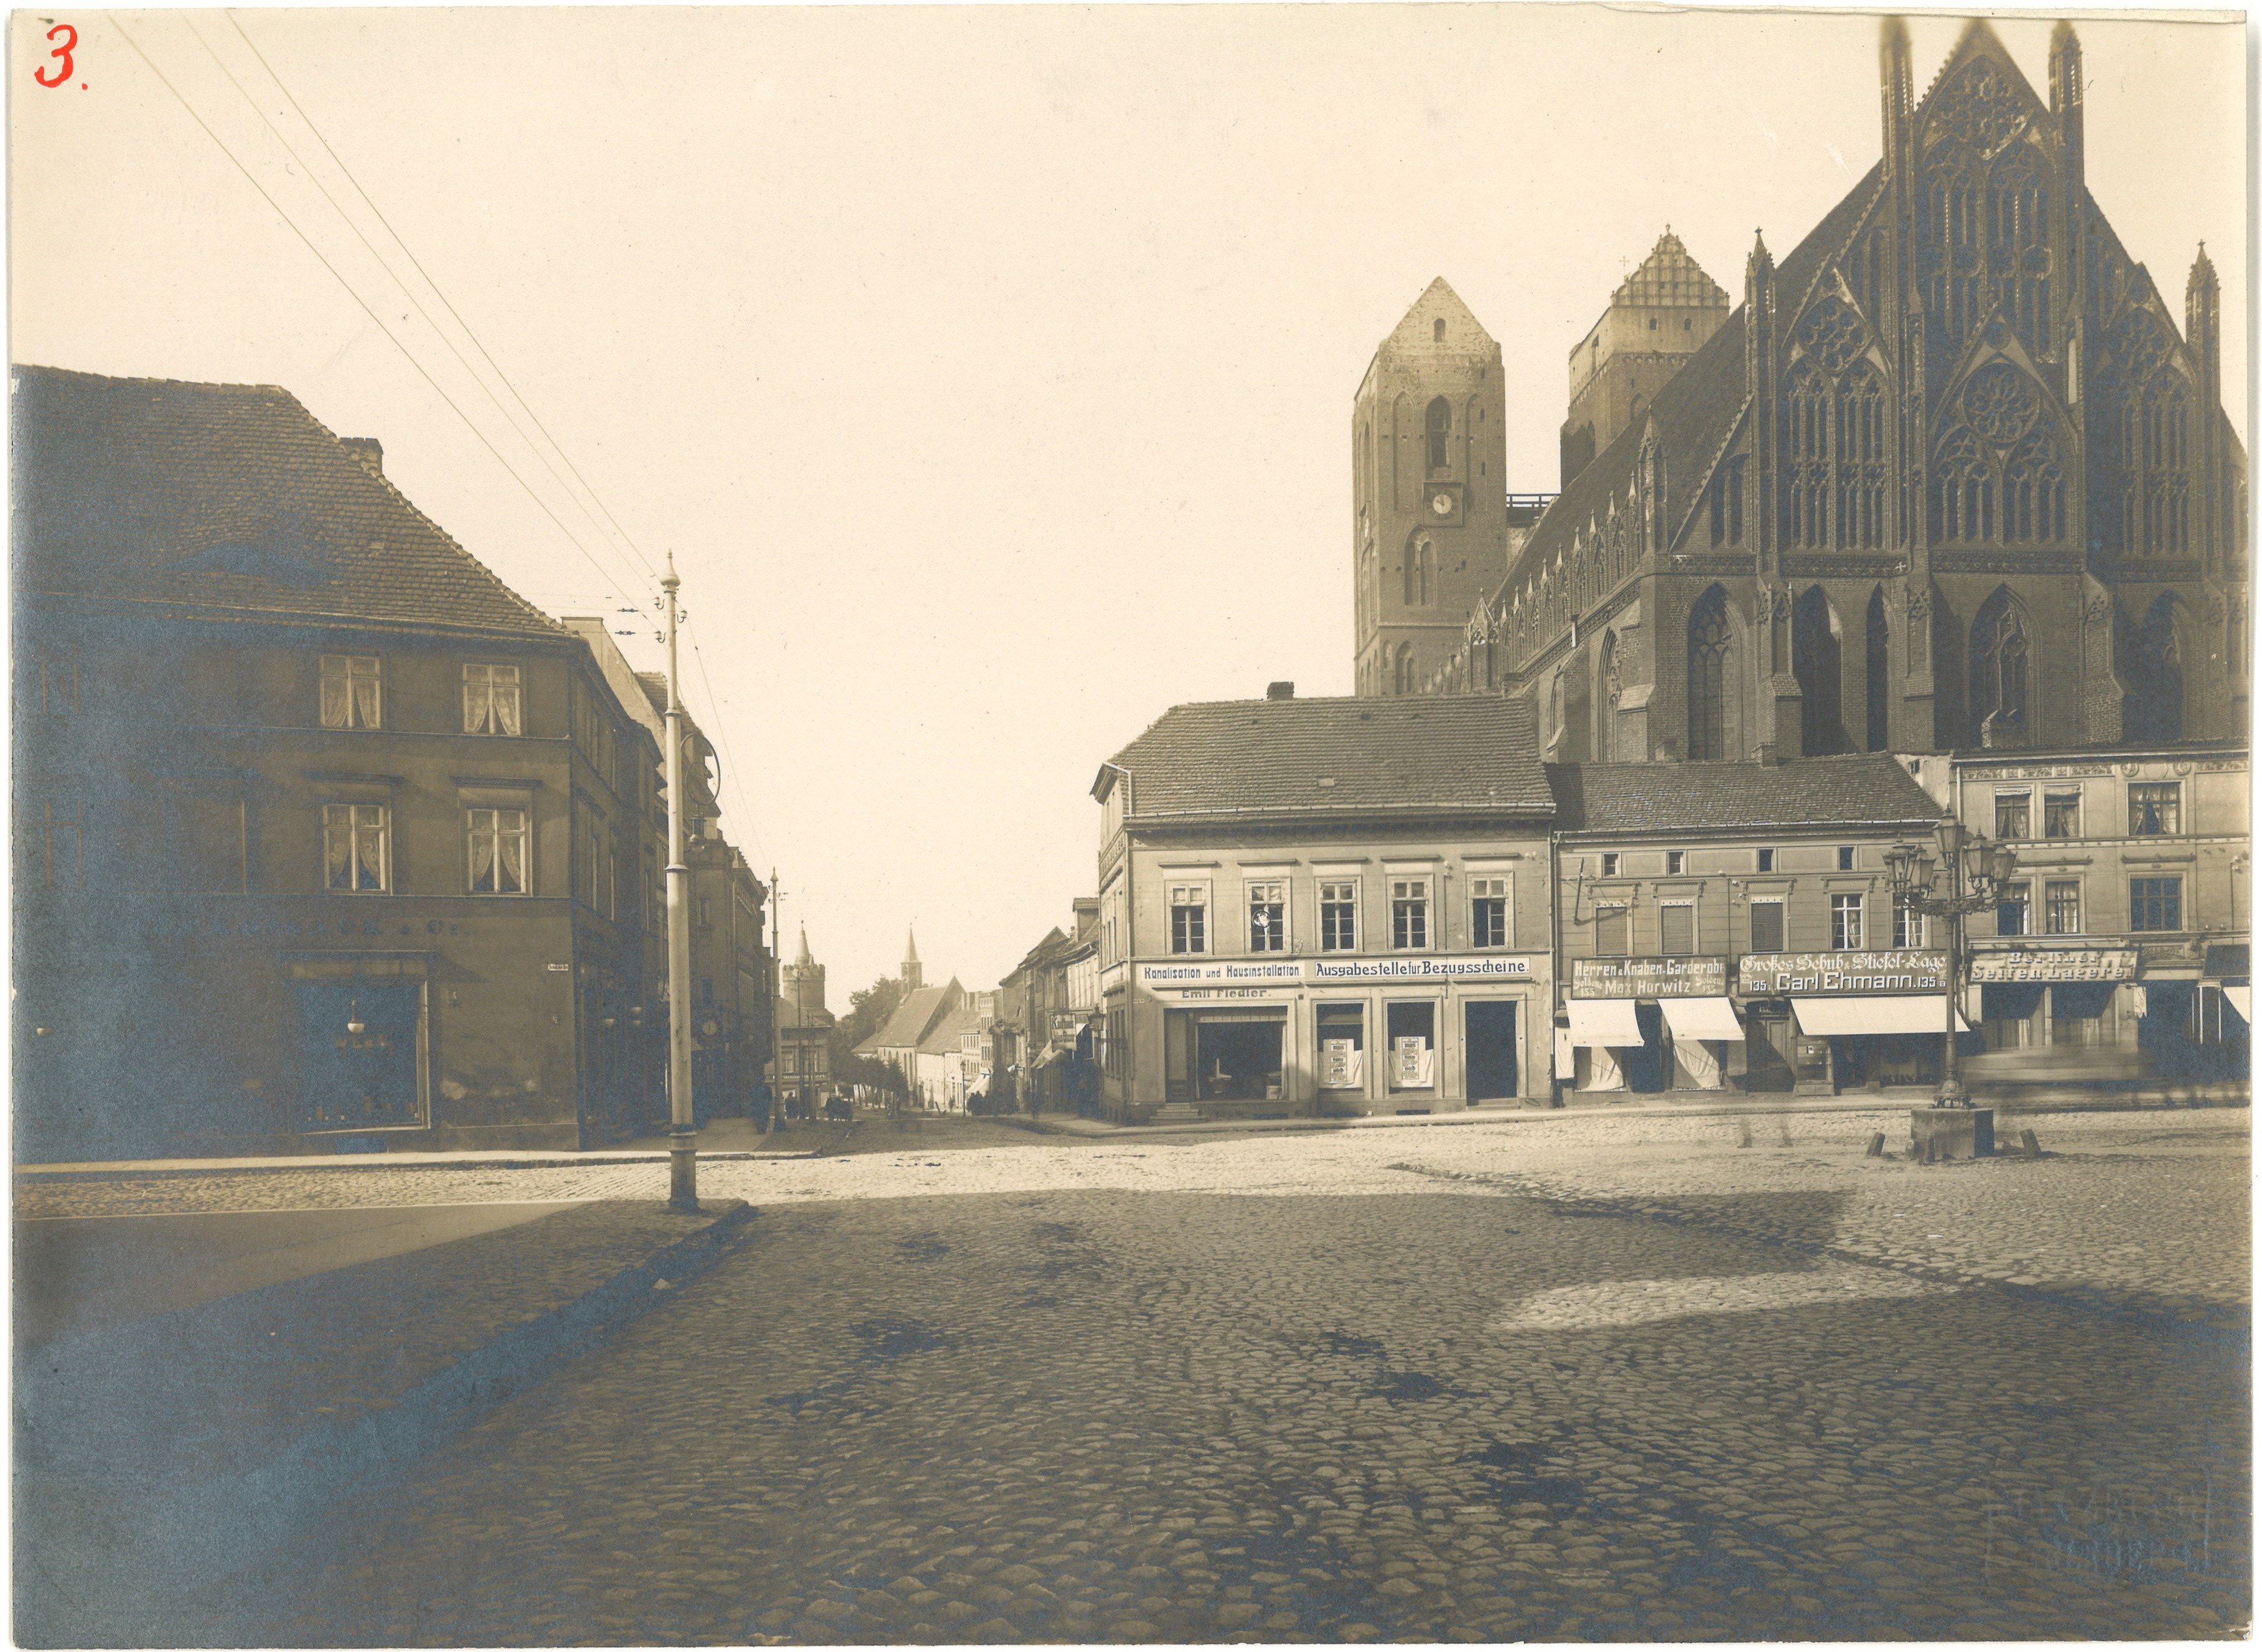 Prenzlau: Markt mit Marienkirche (Landesgeschichtliche Vereinigung für die Mark Brandenburg e.V., Archiv CC BY)